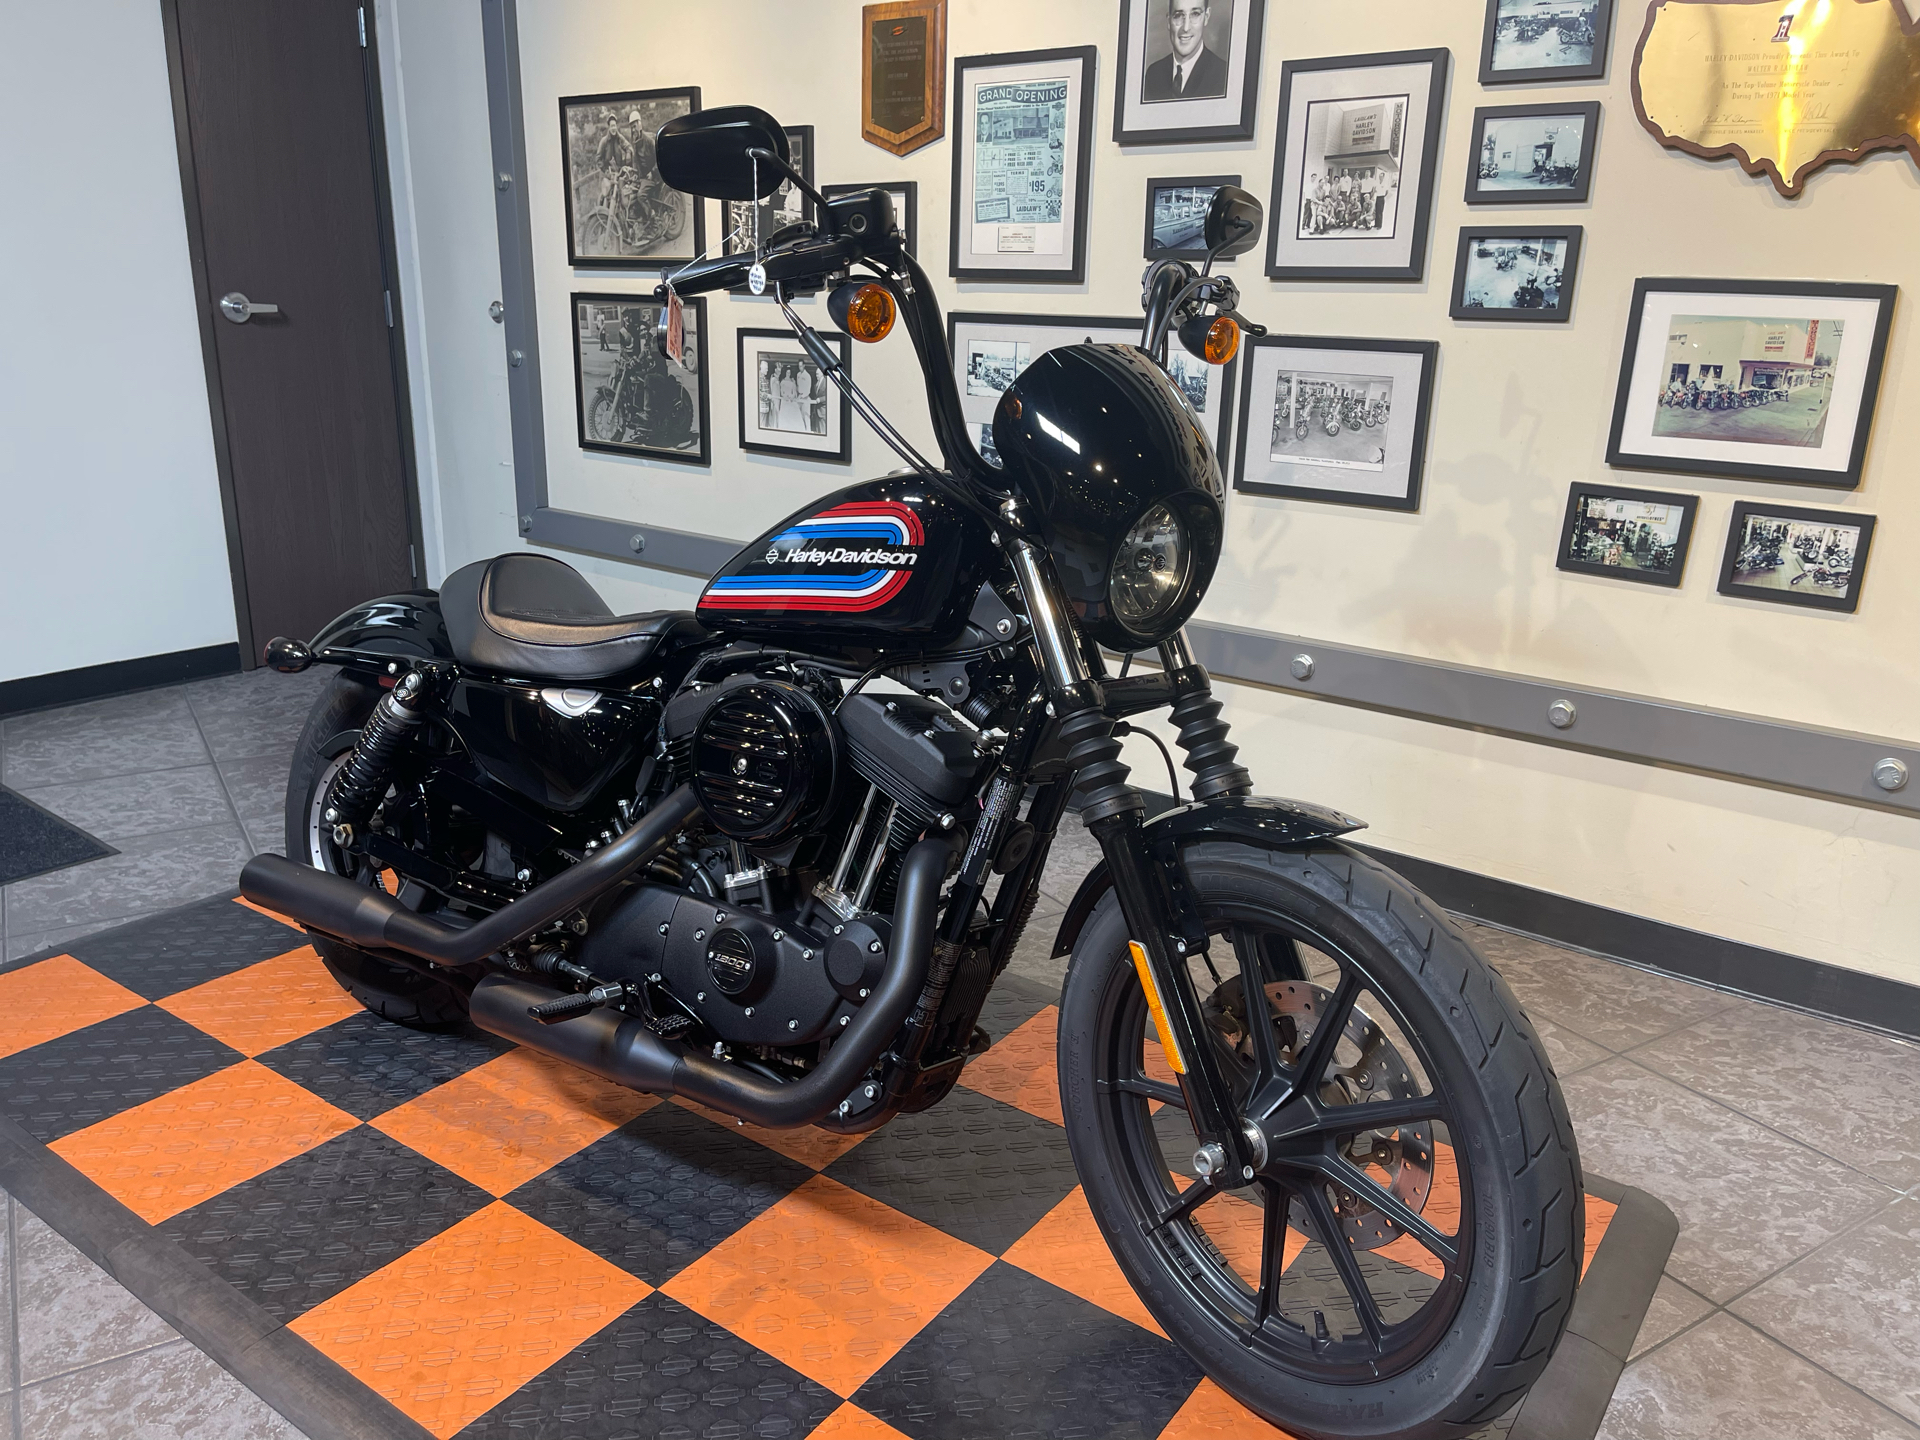 2020 Harley-Davidson Iron 1200™ in Baldwin Park, California - Photo 8